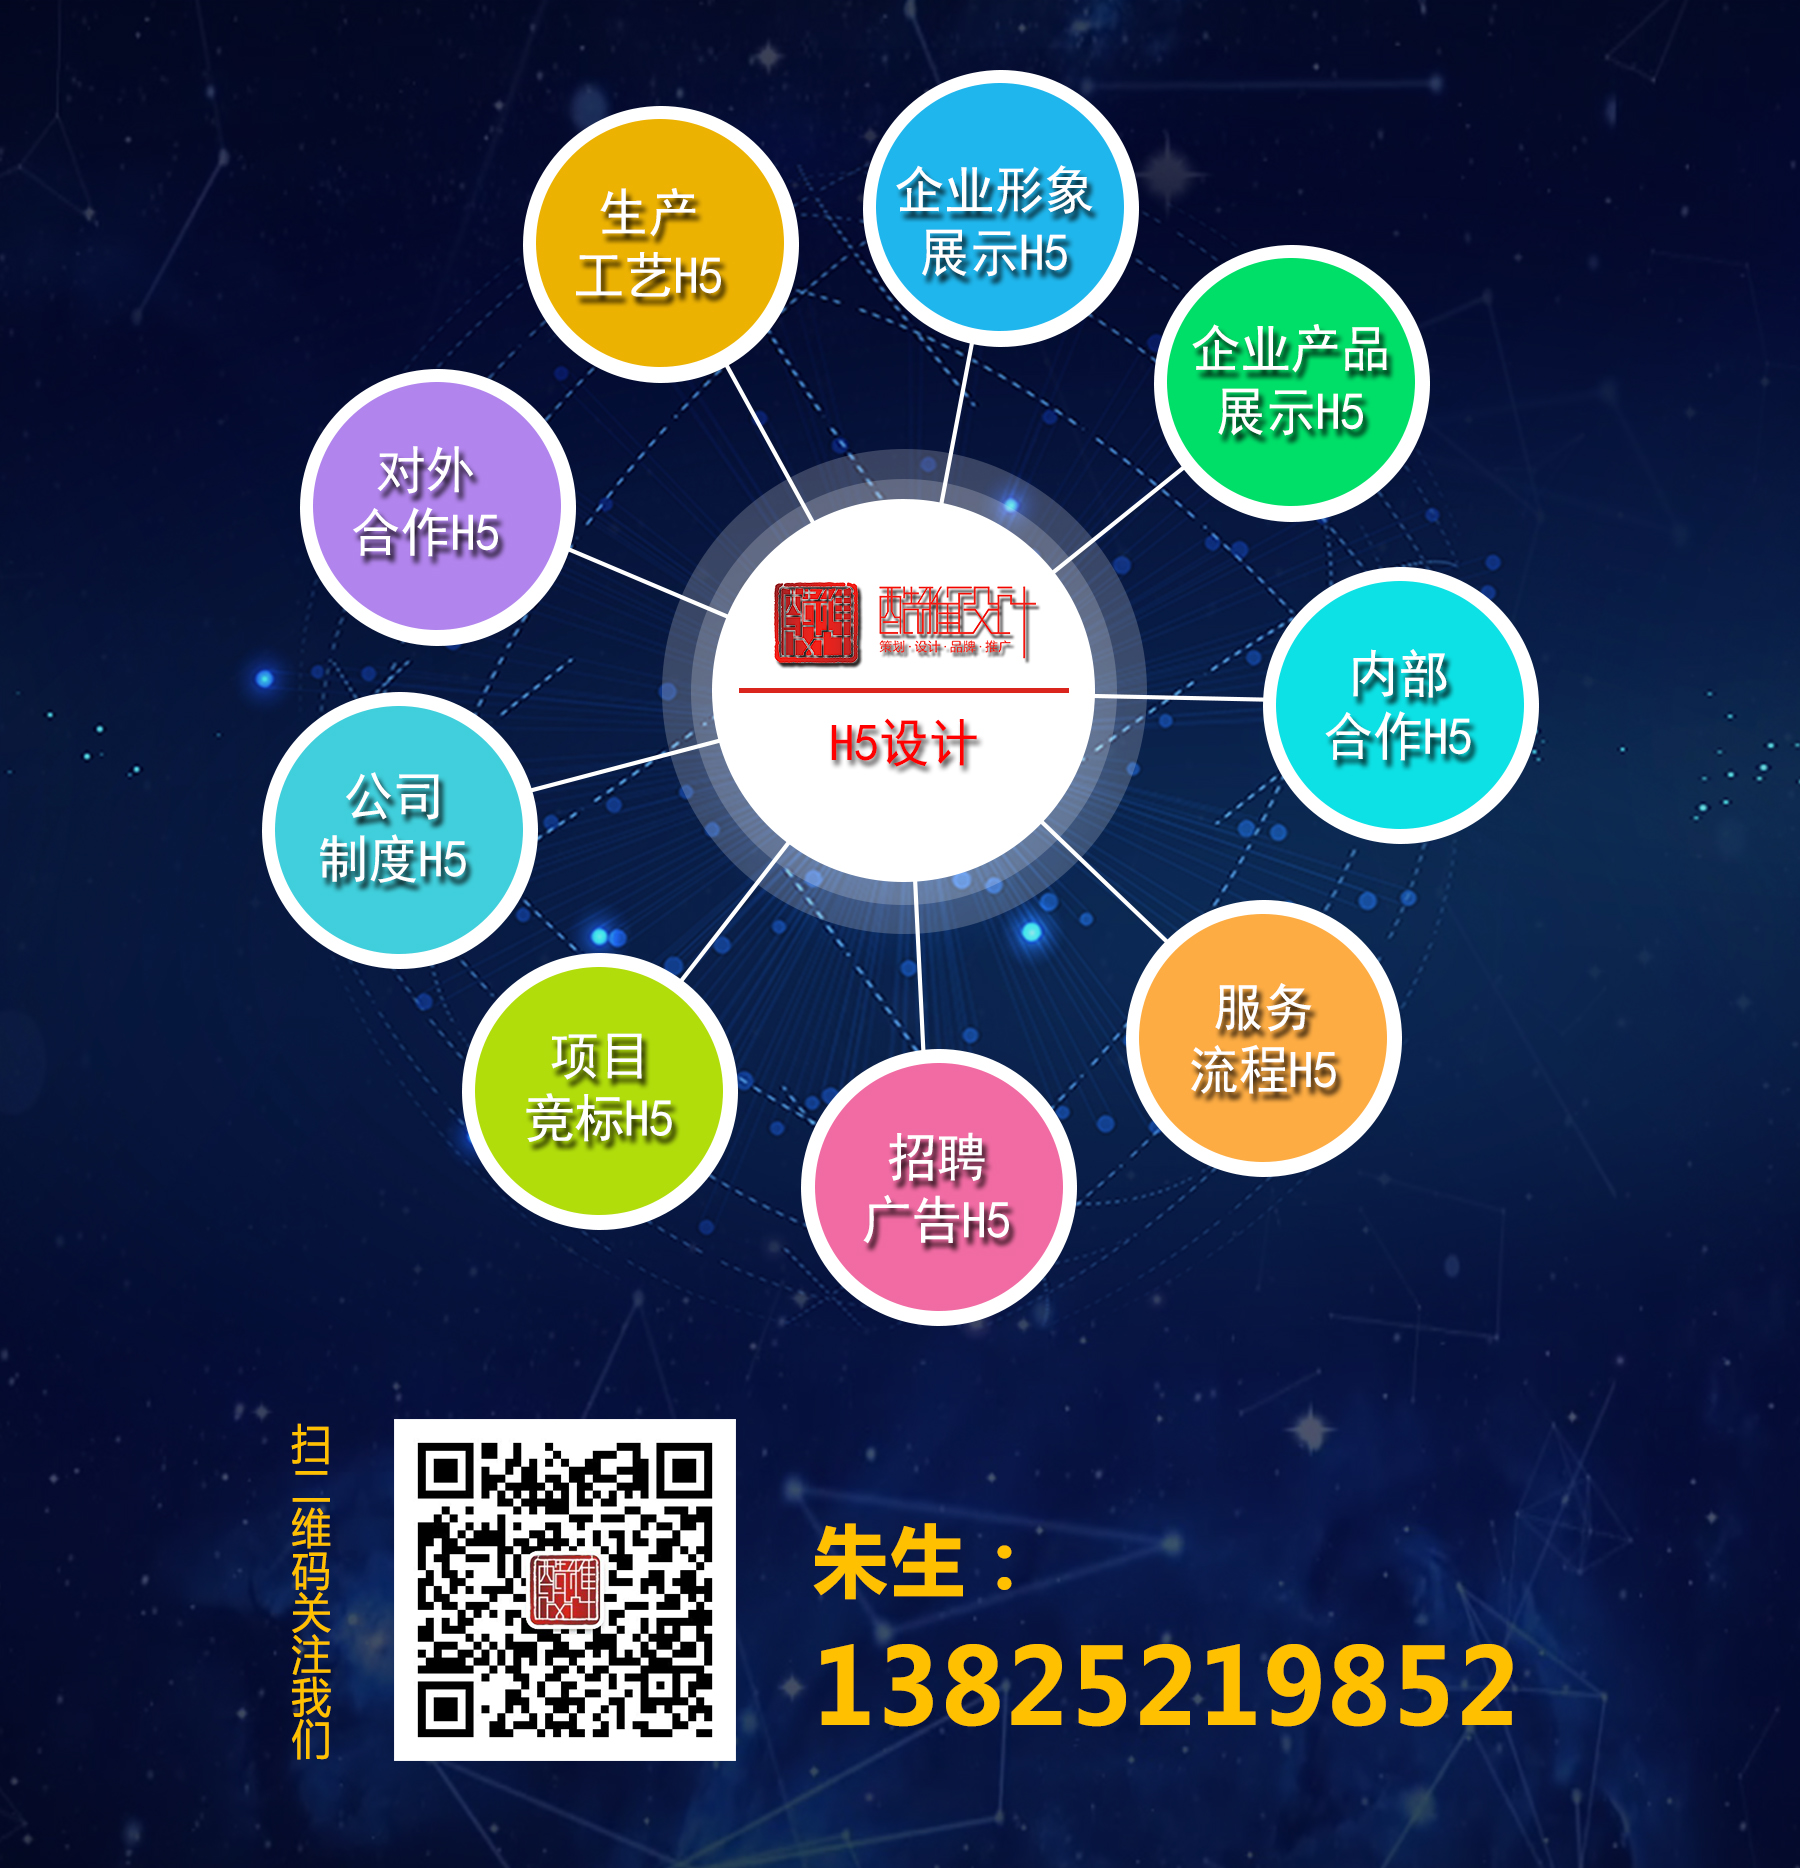 凯时网站·(中国)集团(欢迎您)_image6322